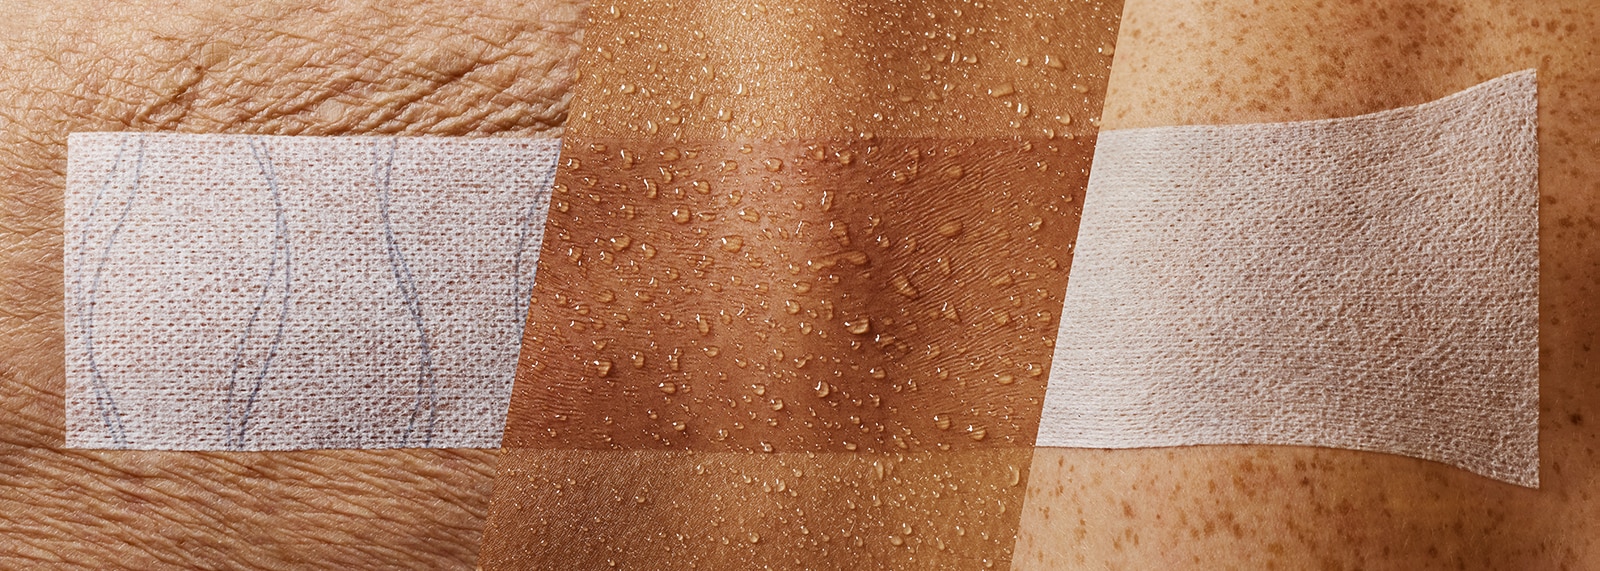 Primo piano di 3 medicazioni di fissaggio applicate su 3 diversi tipi di pelle (medicazione su pelle anziana e rugosa, medicazione trasparente su pelle umida e medicazione stirata su un'articolazione).